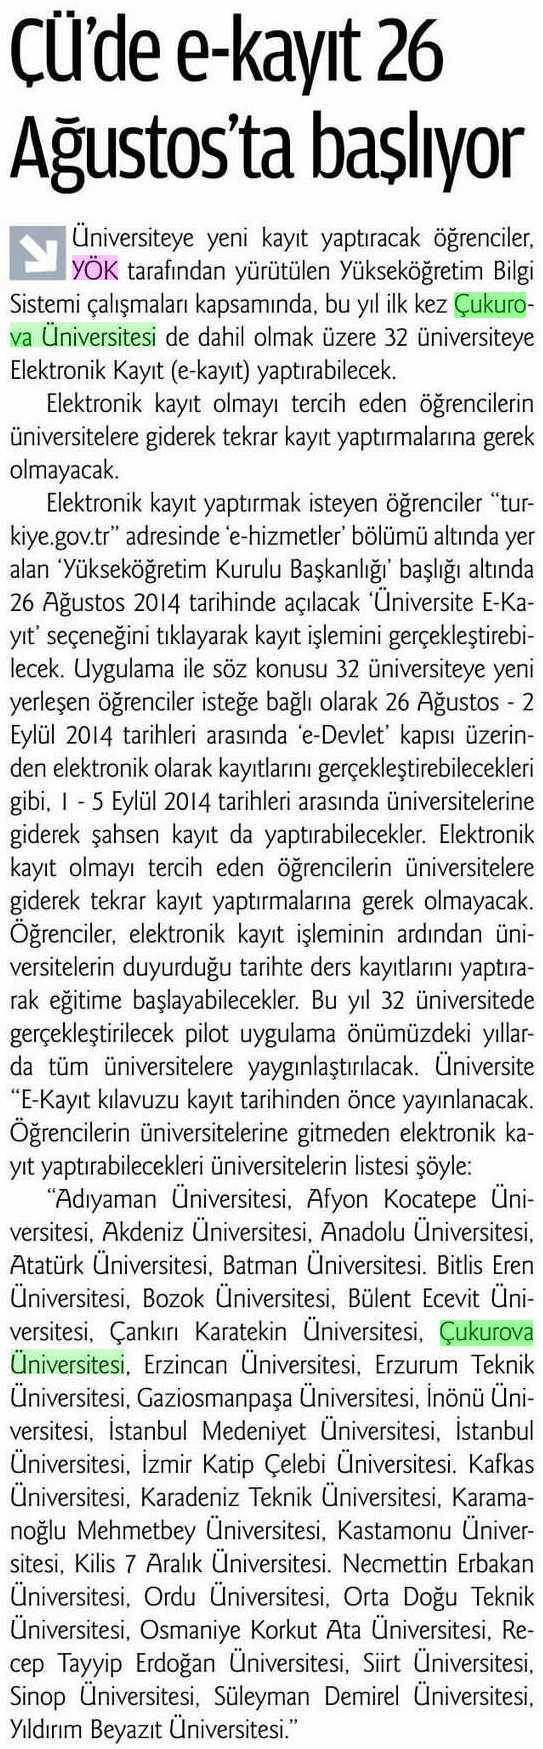 CÜ DE E-KAYIT 26 AGUSTOS TA BASLIYOR Yayın Adı : Adana